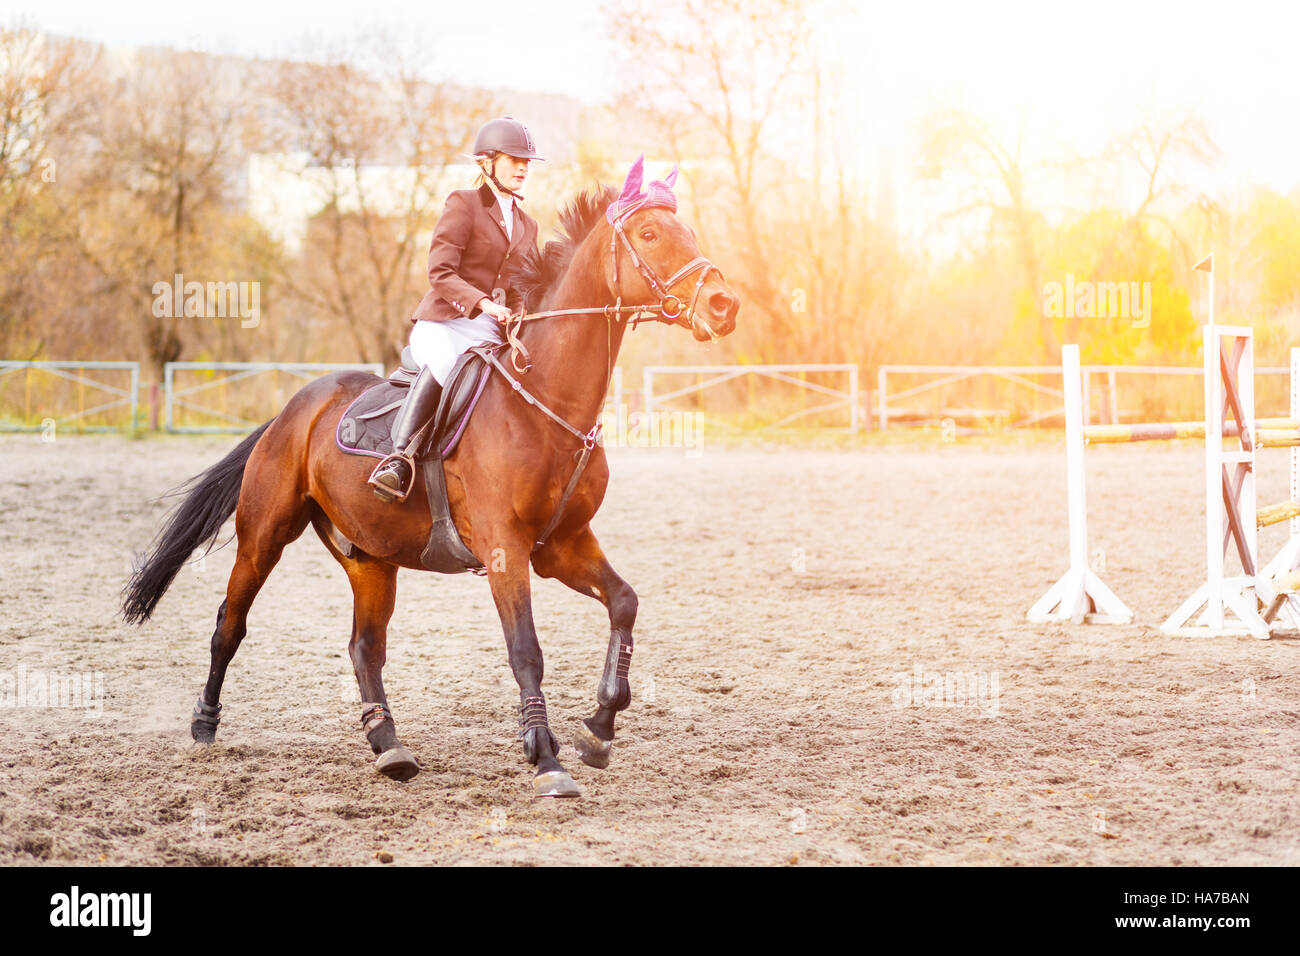 Mujer joven jinete en caballo en la competencia. Antecedentes del deporte ecuestre Foto de stock